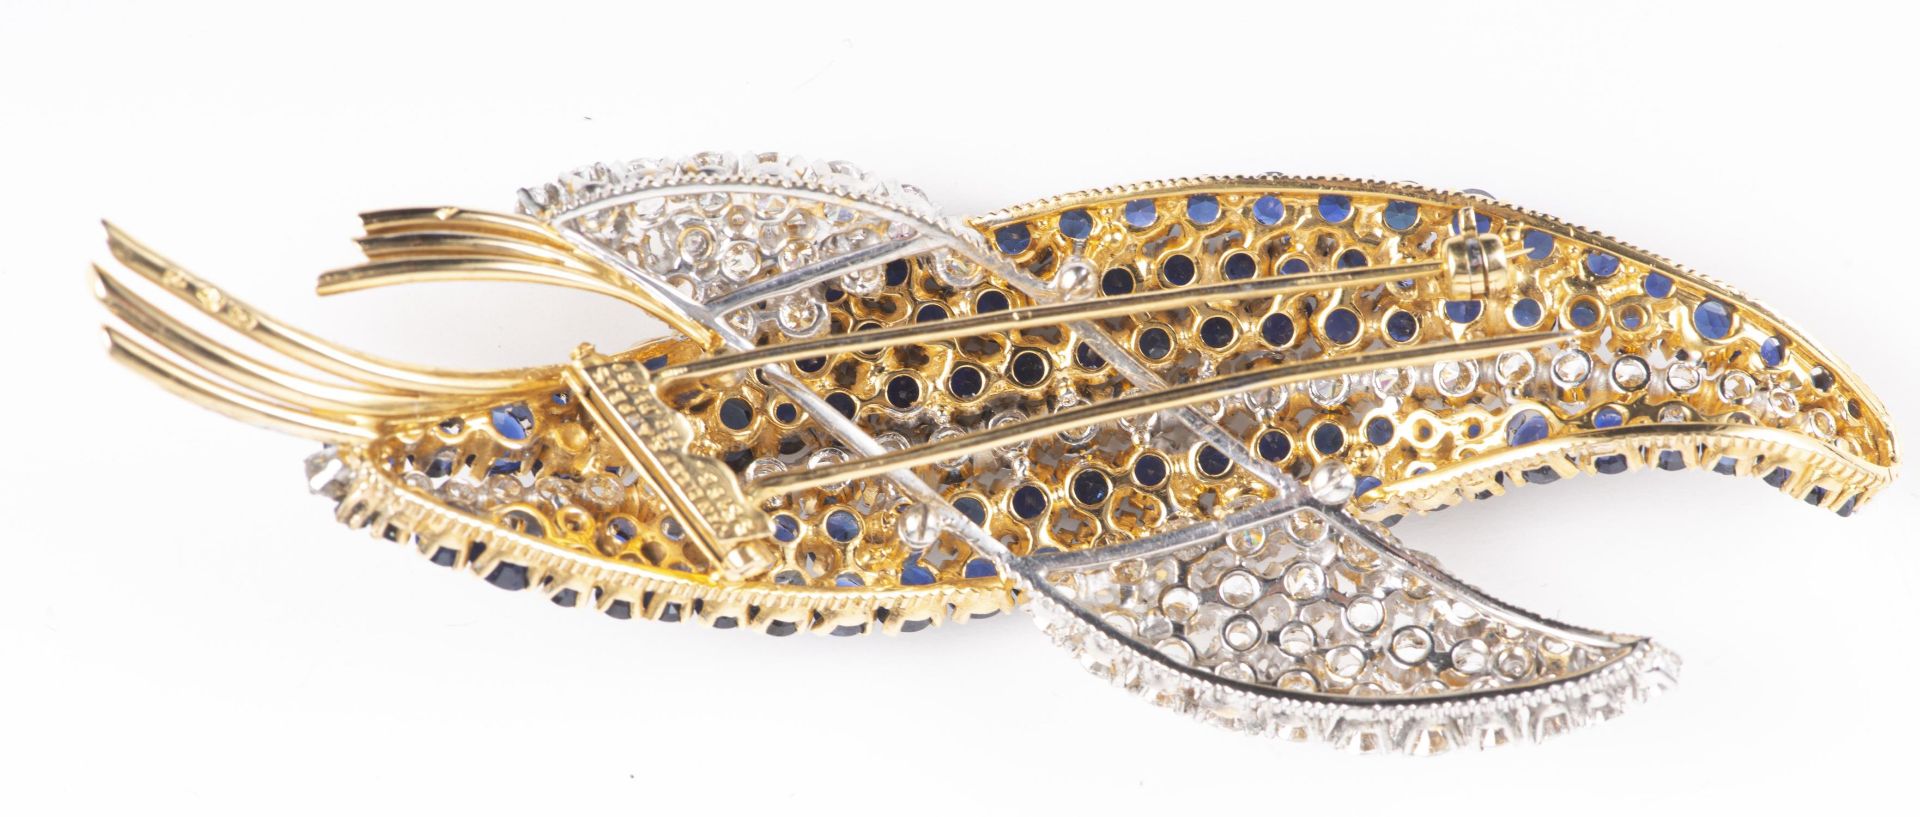 VAN CLEEF & ARPELS, broche double feuille en or et platine avec diamants et saphirs - Image 7 of 18